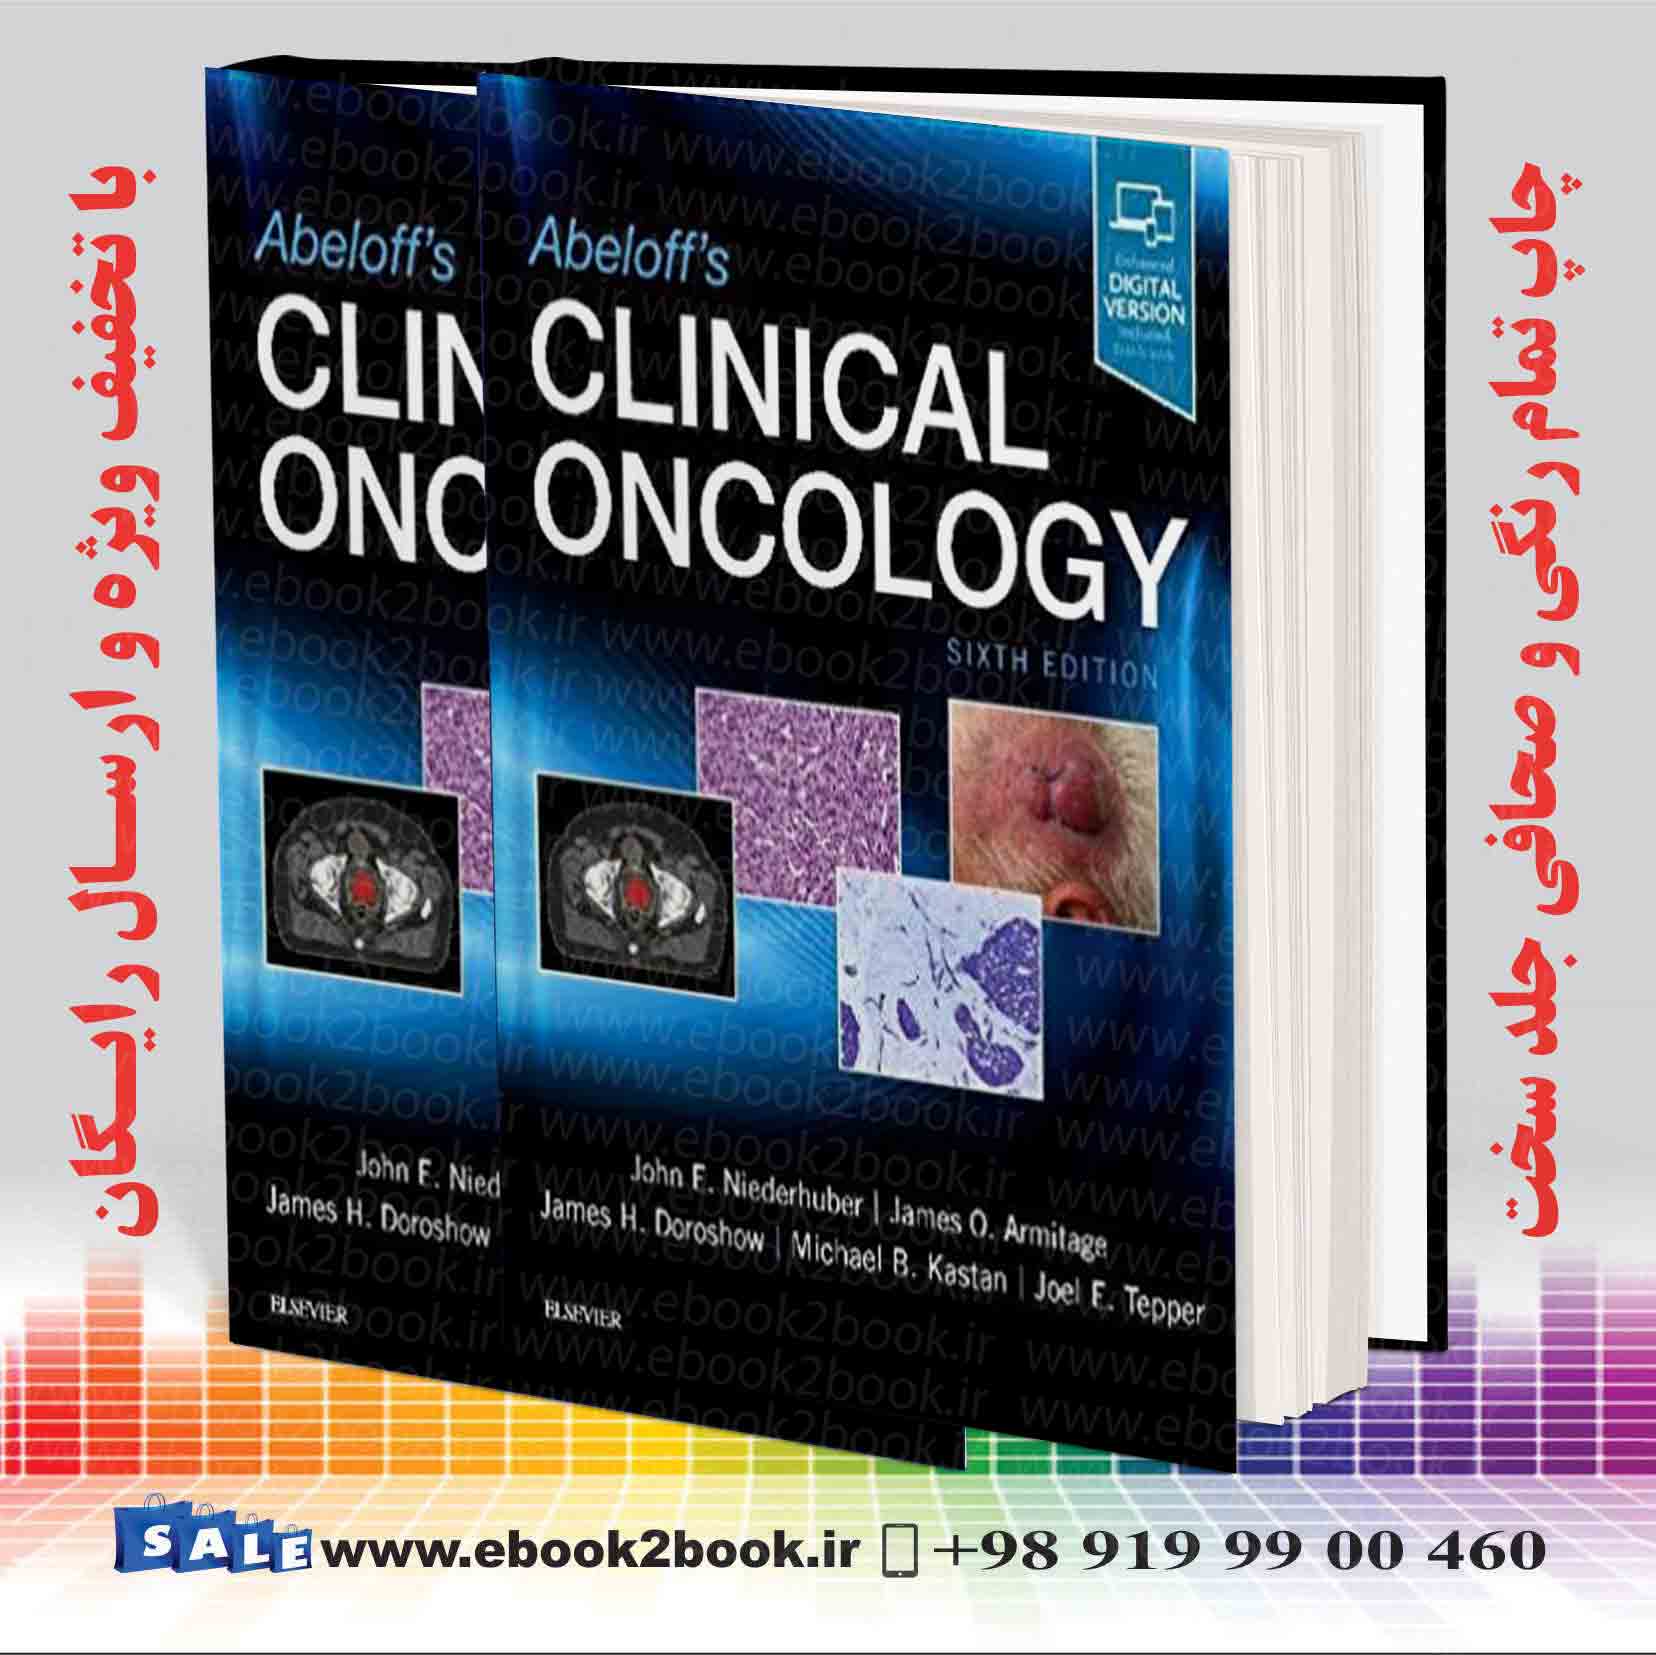 انکولوژی بالینی ابلوف Abeloff's Clinical Oncology 6th Edition فروشگاه کتاب ایبوک تو بوک